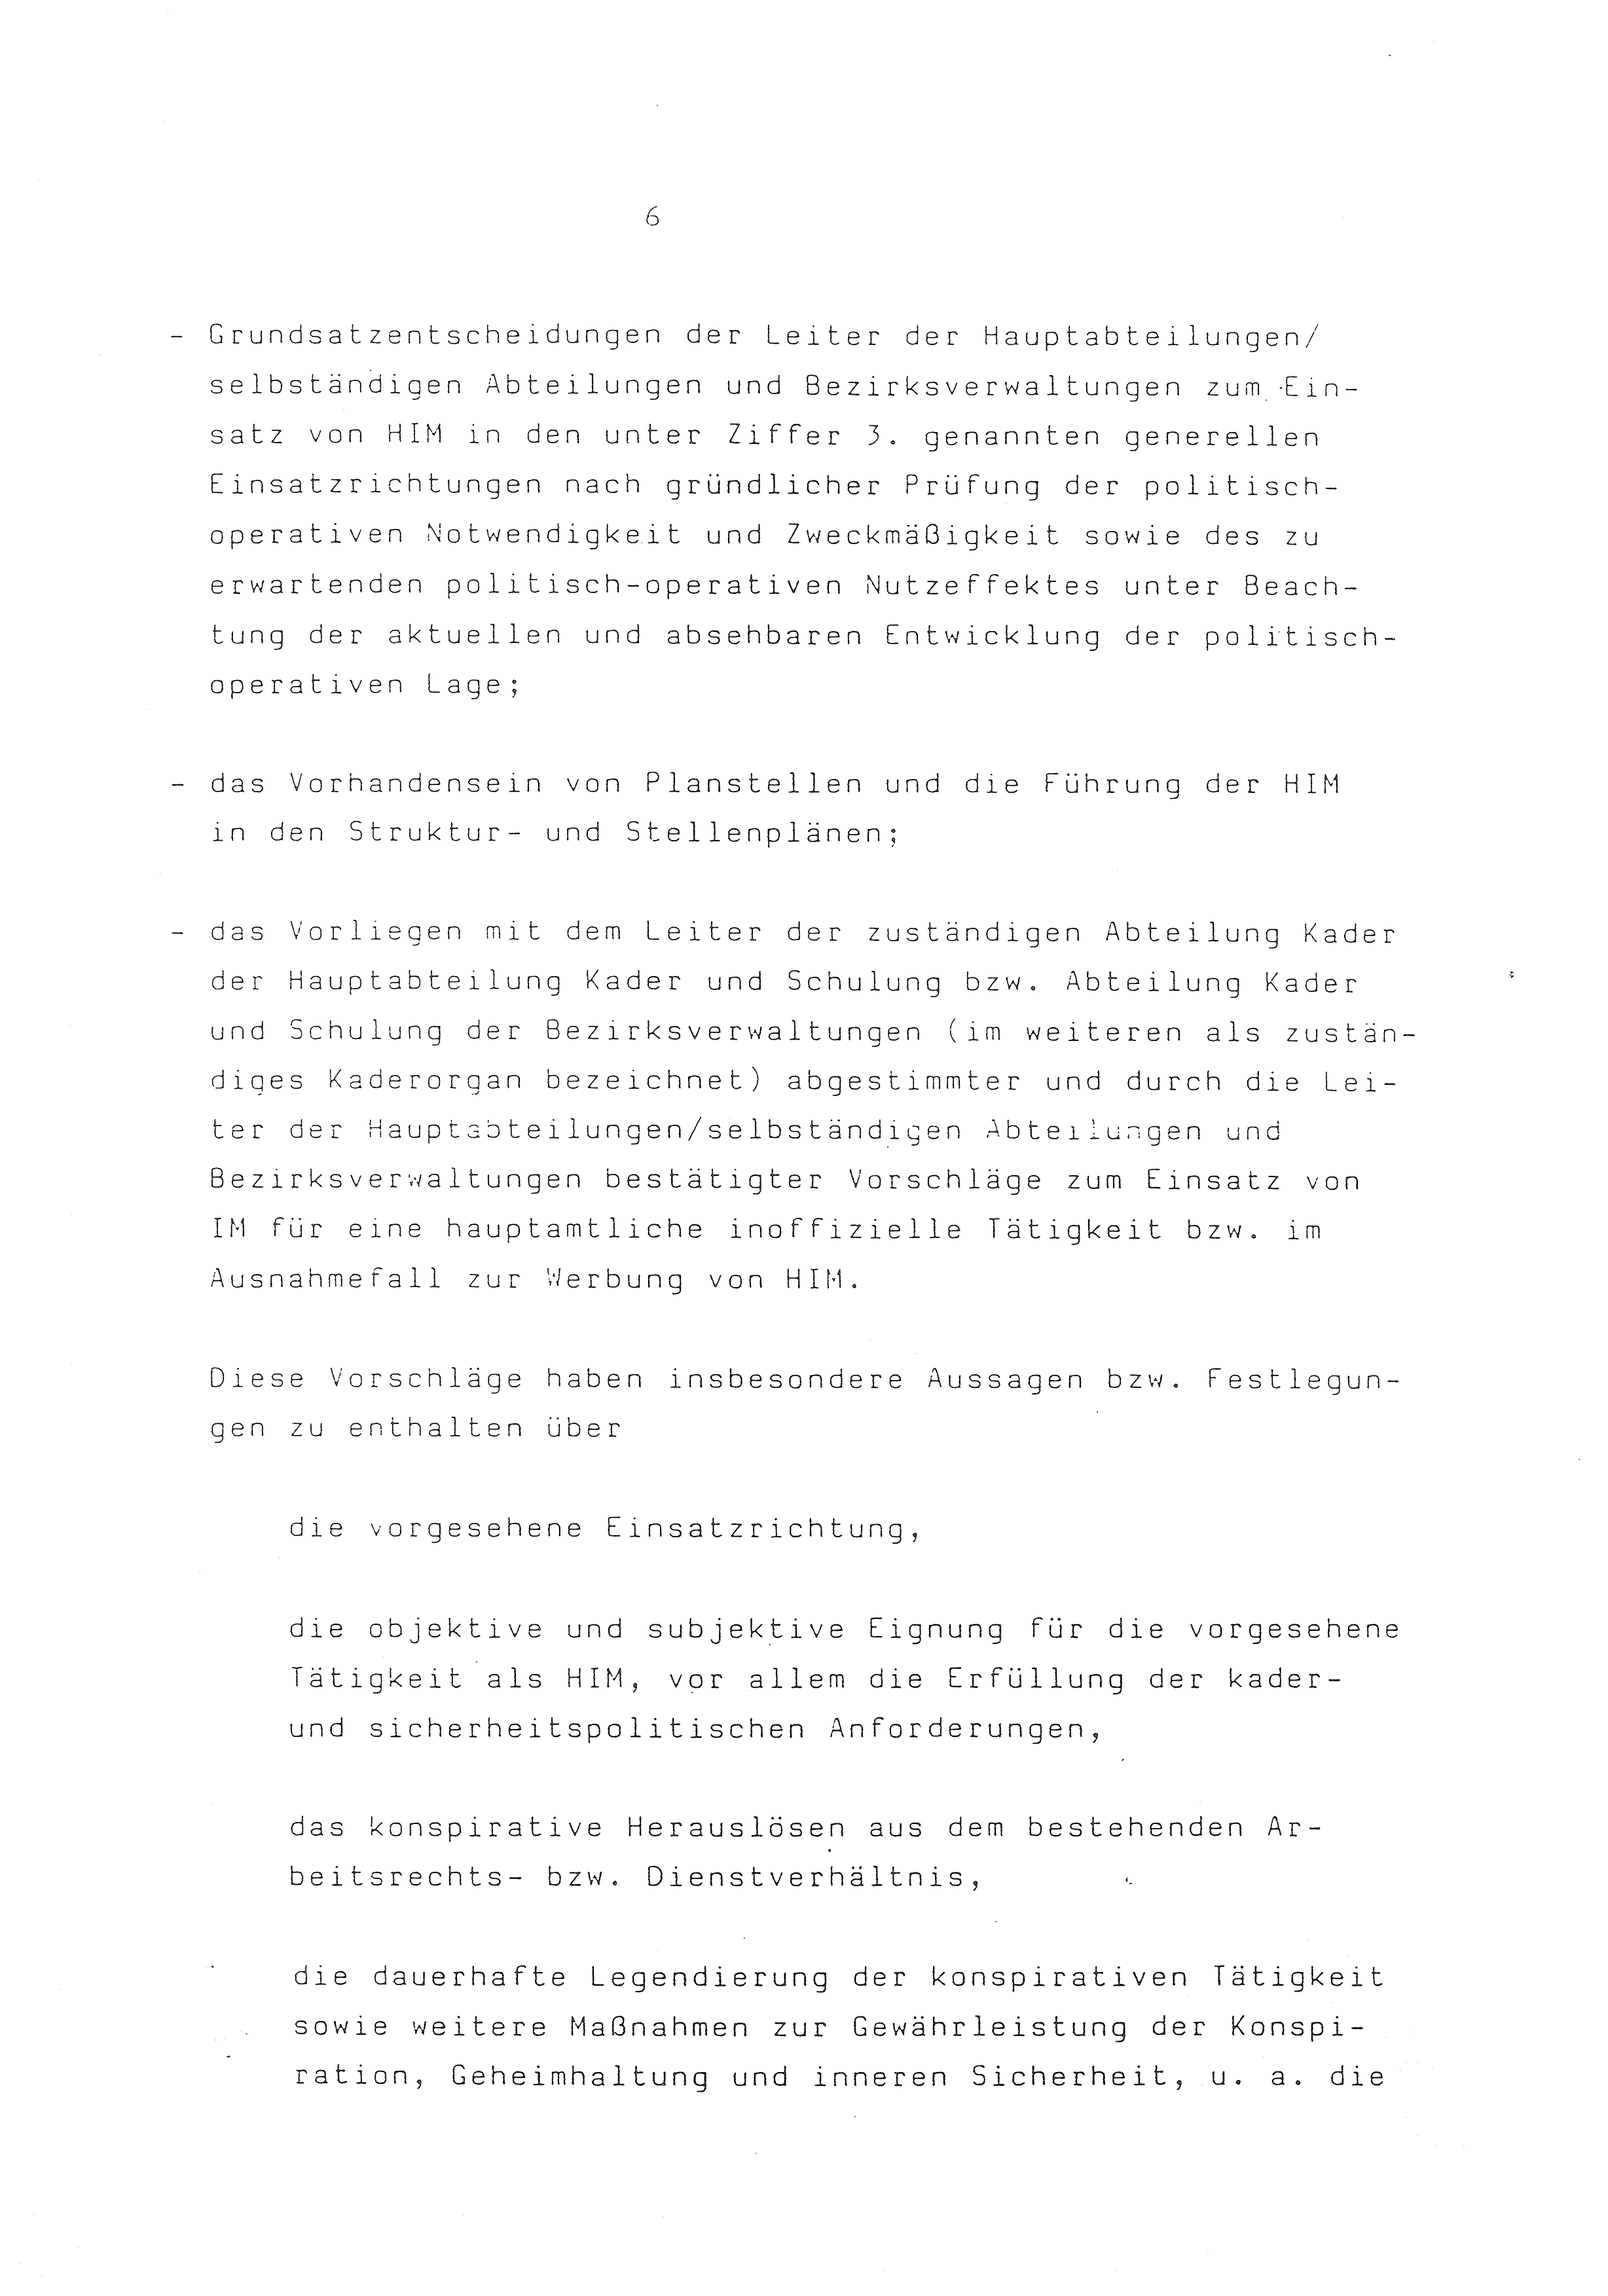 2. Durchführungsbestimmung zur Richtlinie 1/79 über die Arbeit mit hauptamtlichen Mitarbeitern des MfS (HIM), Deutsche Demokratische Republik (DDR), Ministerium für Staatssicherheit (MfS), Der Minister (Mielke), Geheime Verschlußsache (GVS) ooo8-44/86, Berlin 1986, Seite 6 (2. DB RL 1/79 DDR MfS Min. GVS ooo8-44/86 1986, S. 6)